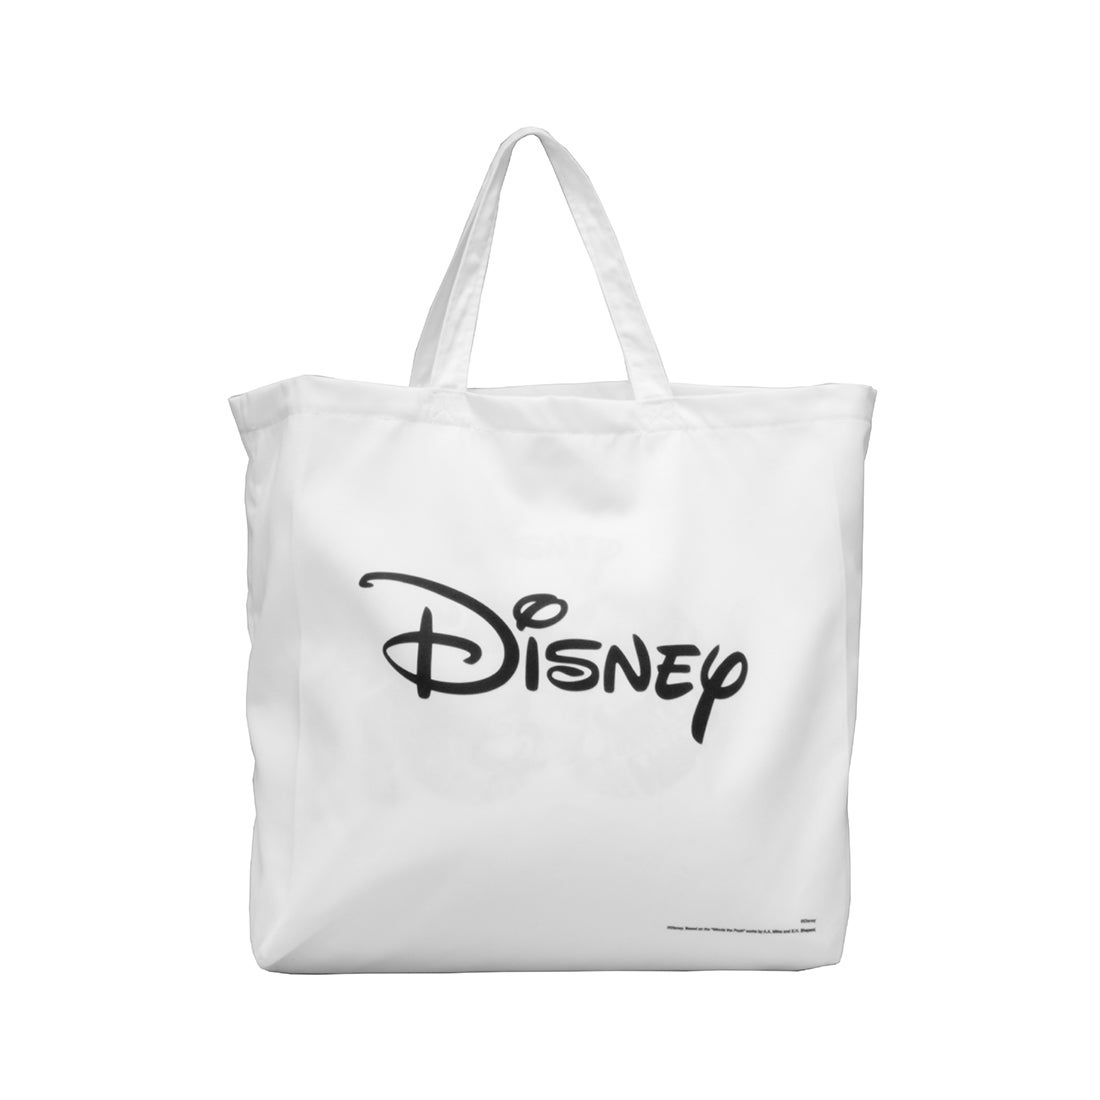 ถุงผ้า Disney Collection สีขาว